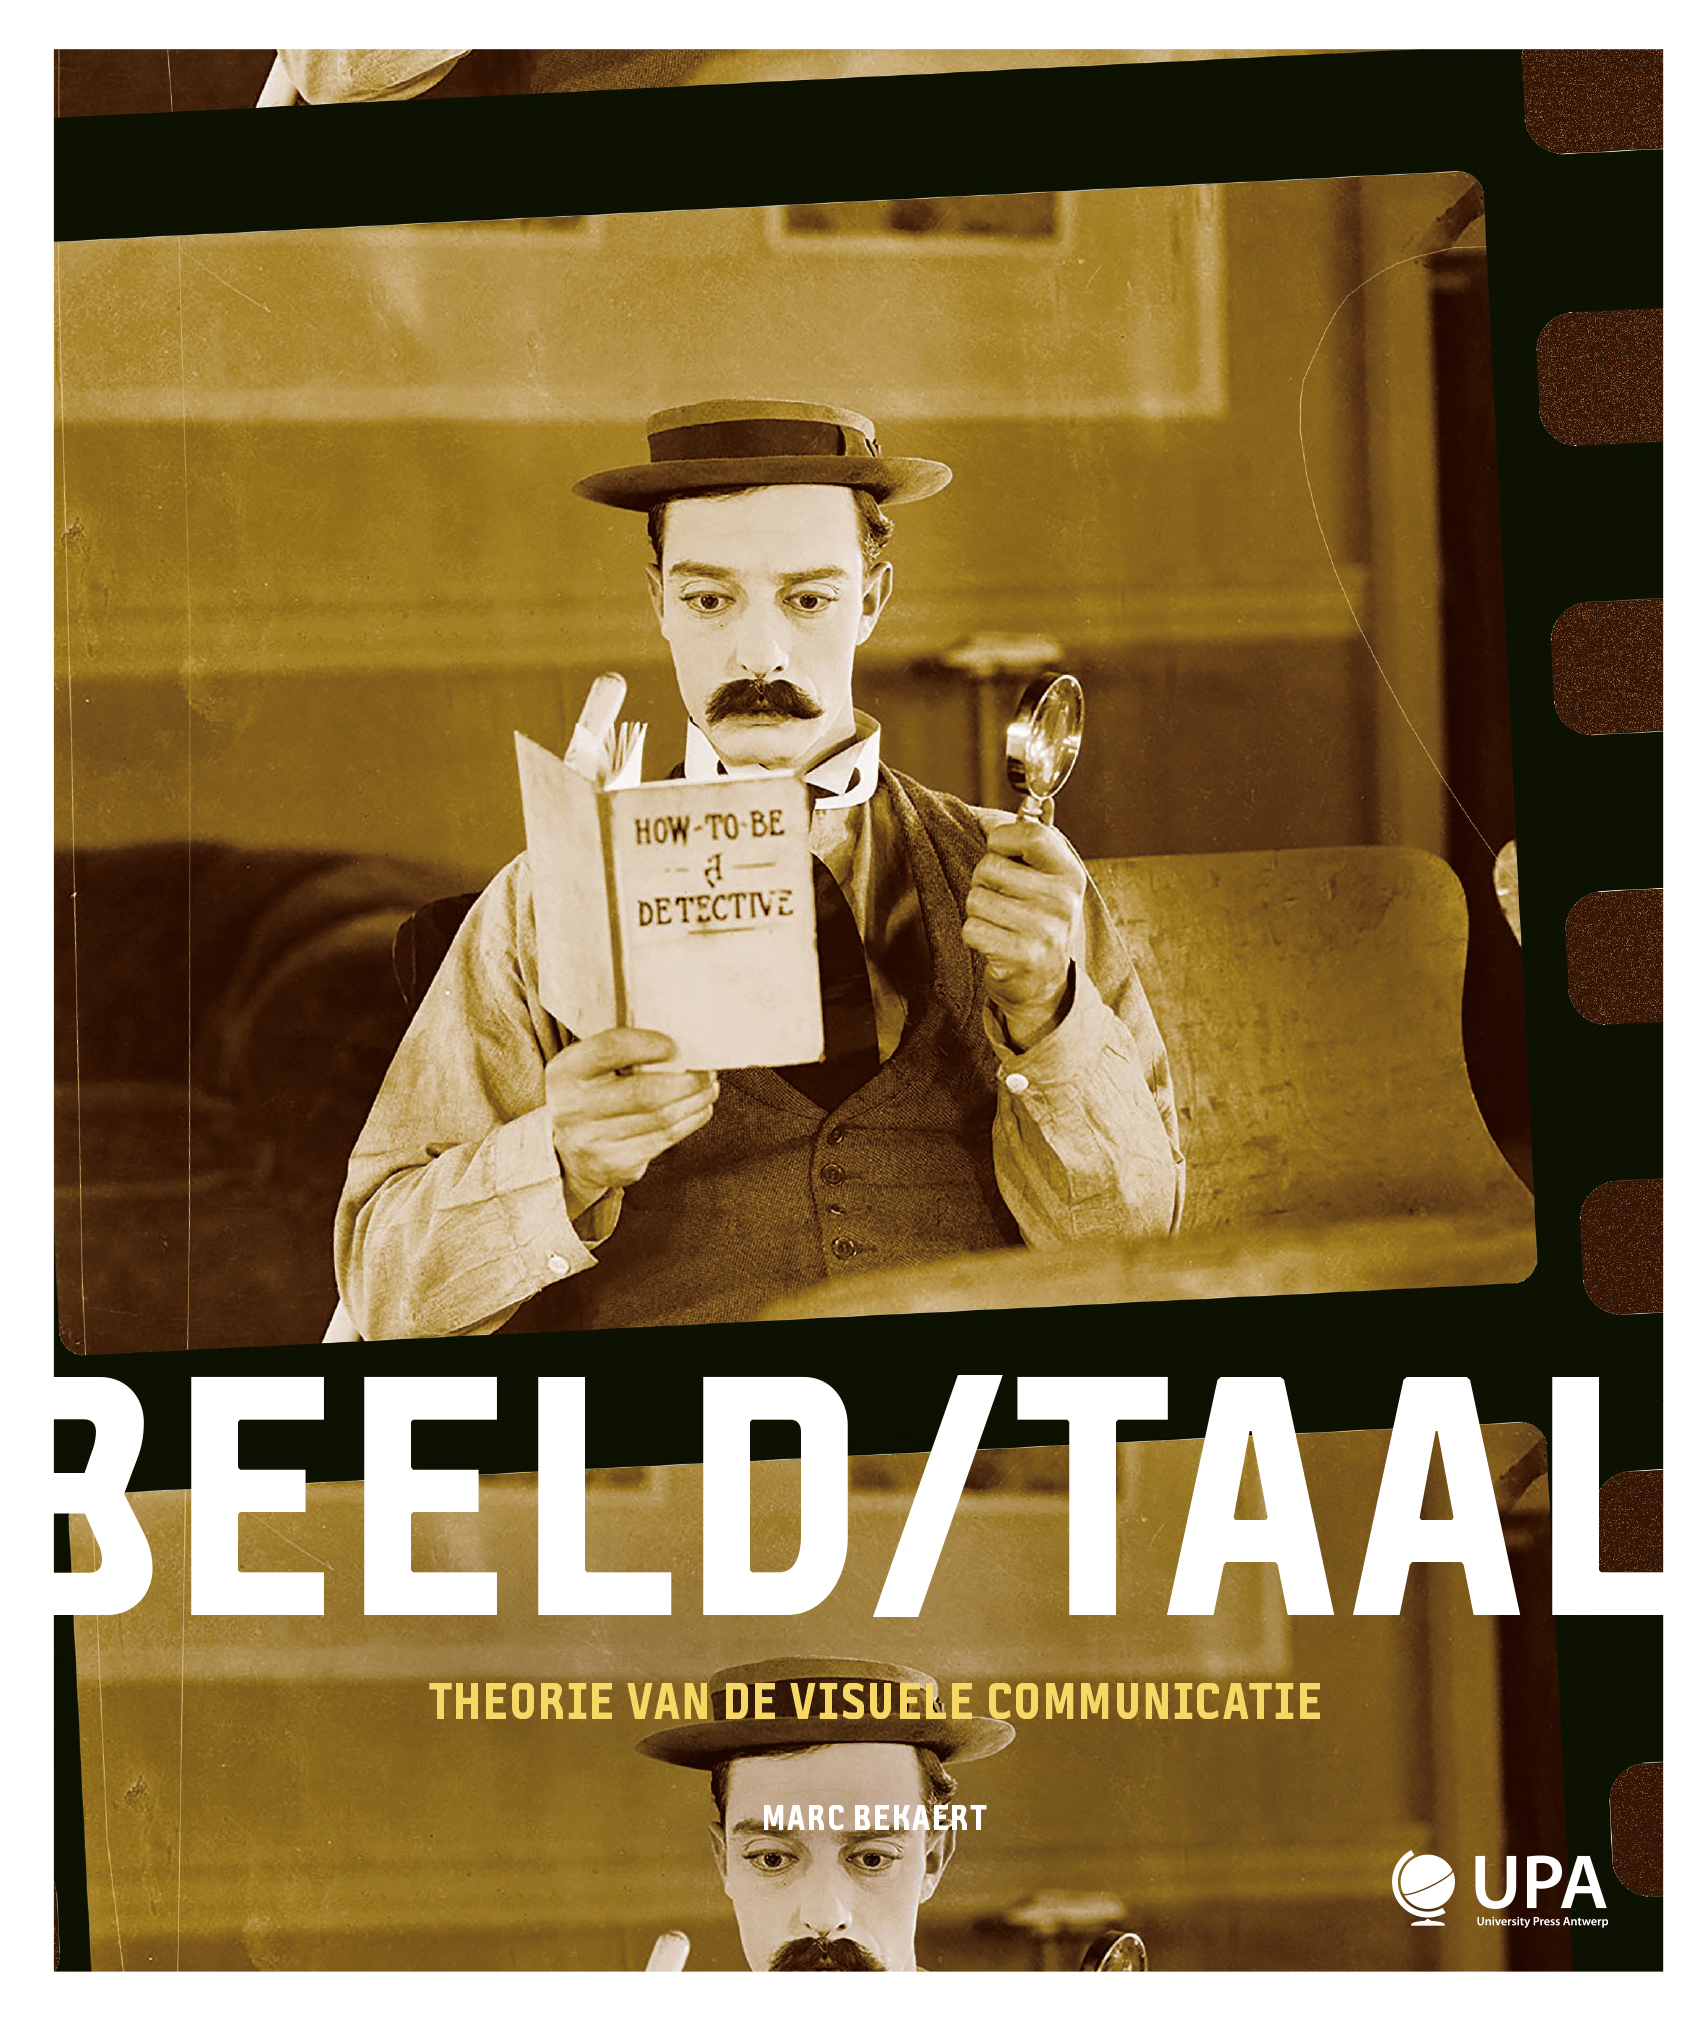 BEELD/TAAL